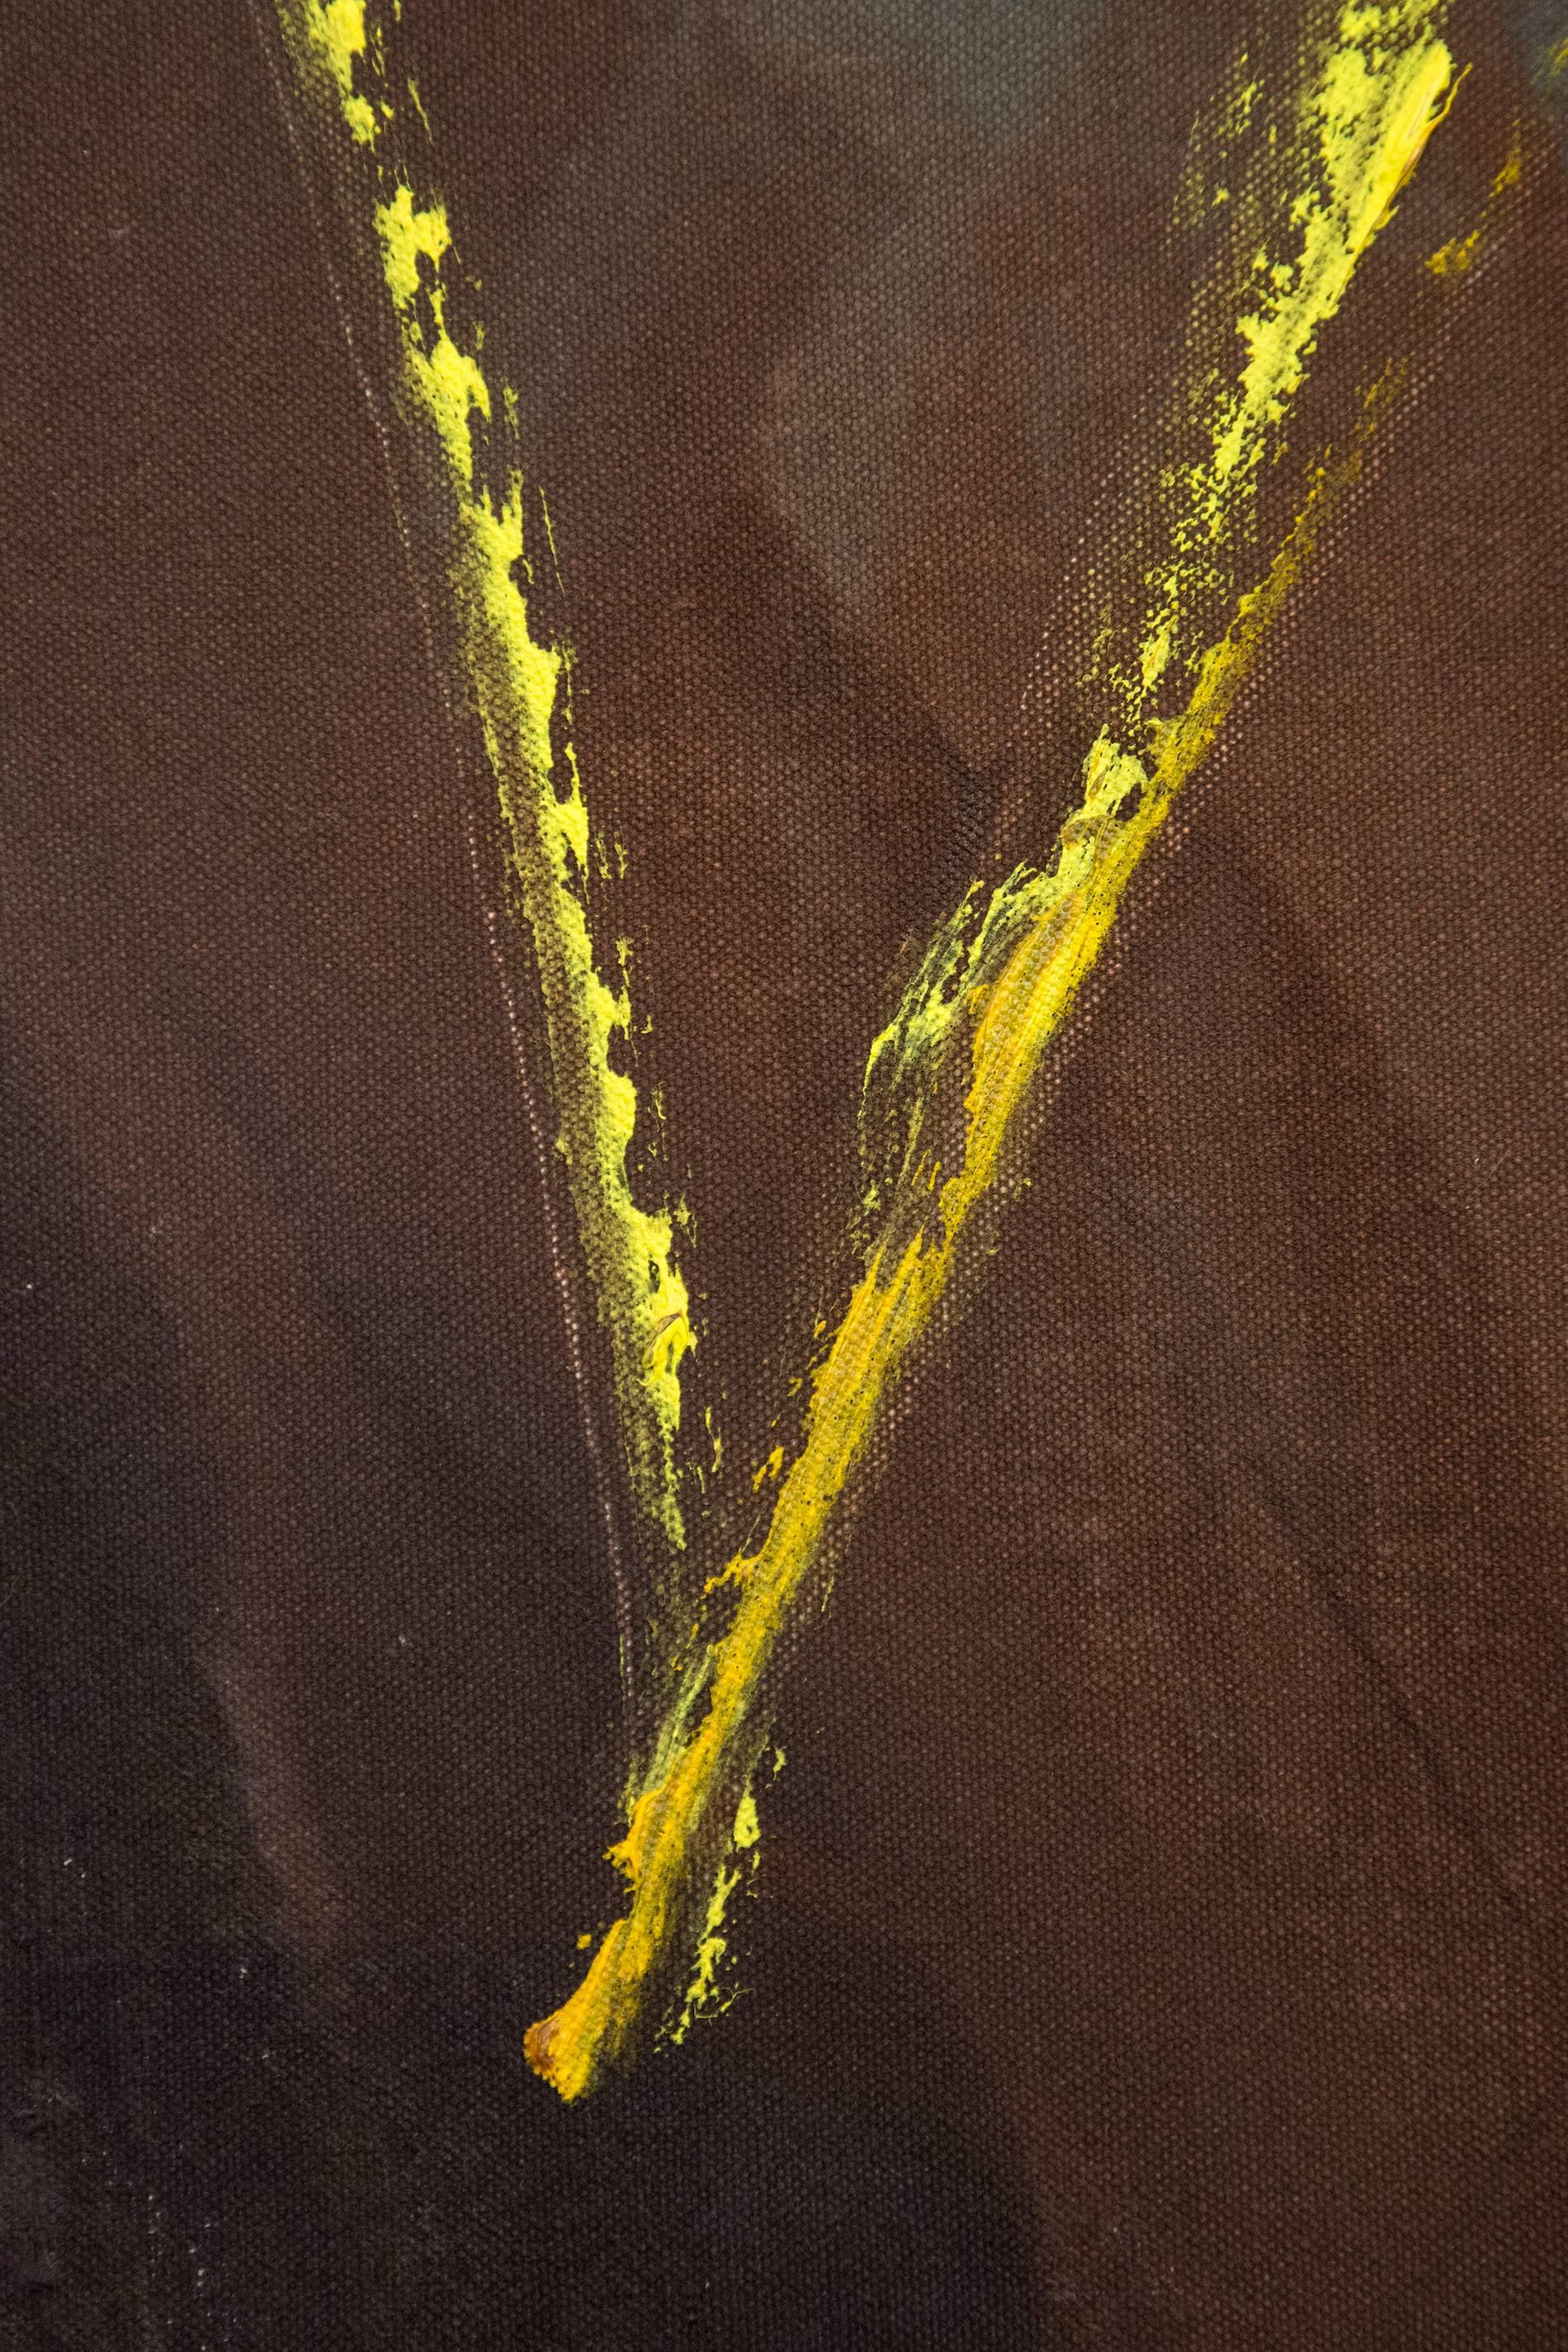 Unten - groß, lila, ocker, gelb, gestisch abstrakt, Acryl auf Leinwand 1